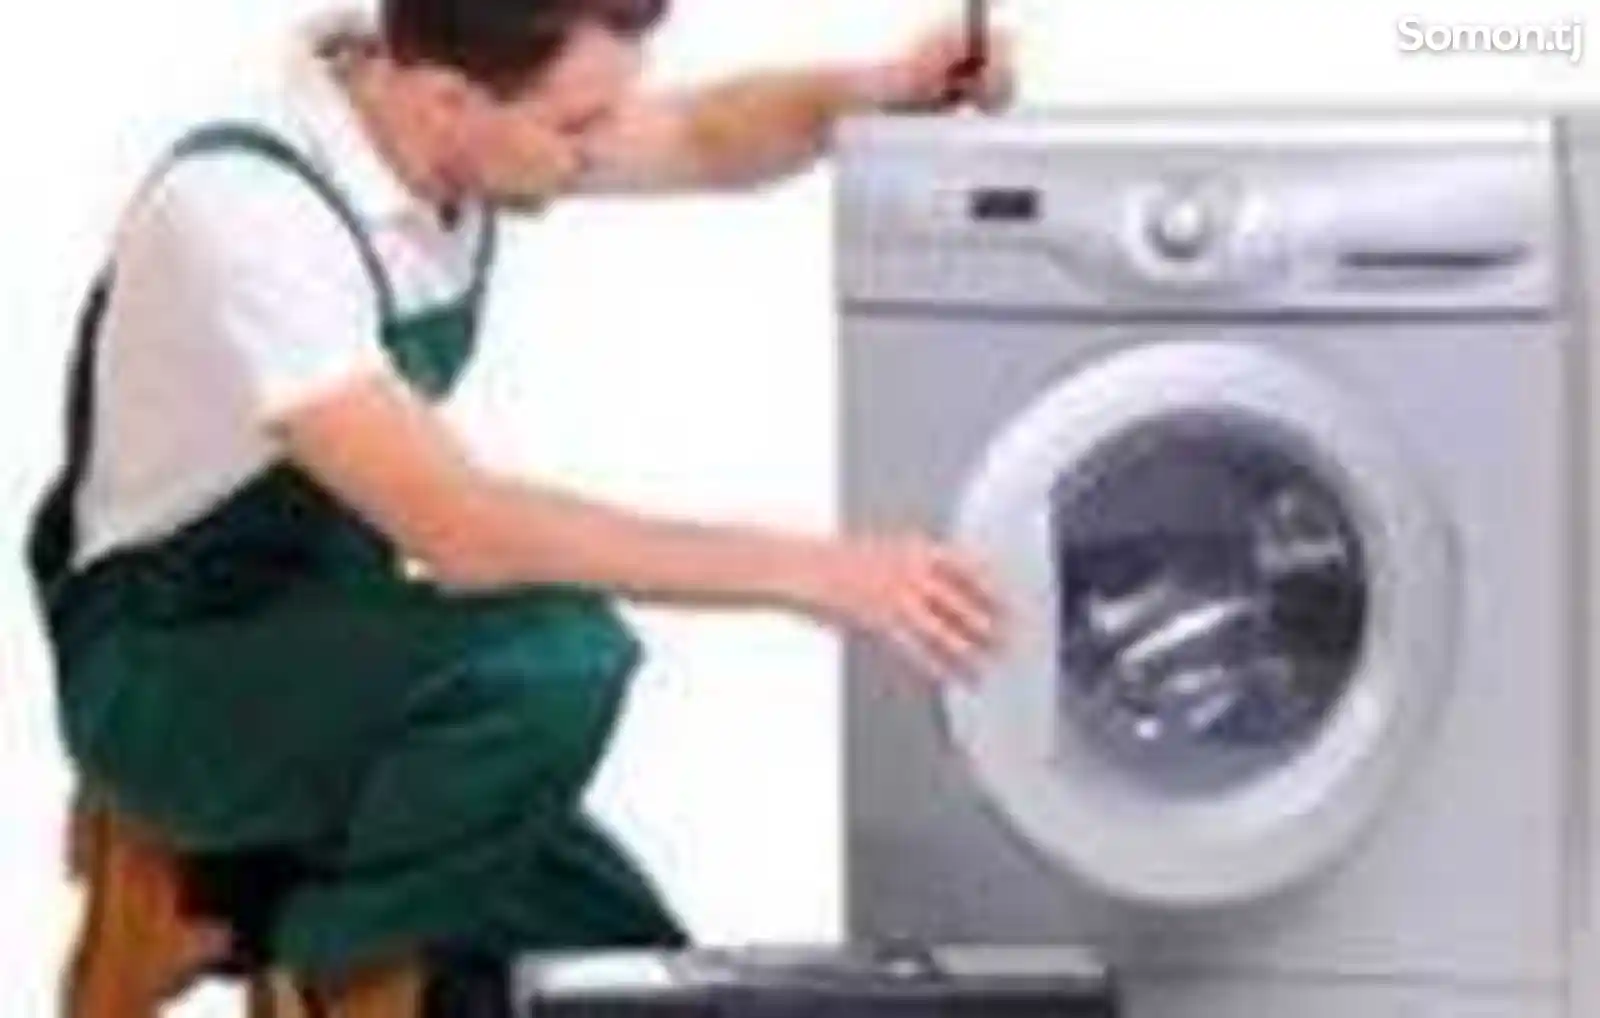 Установка стиральных и посудомоечных машин